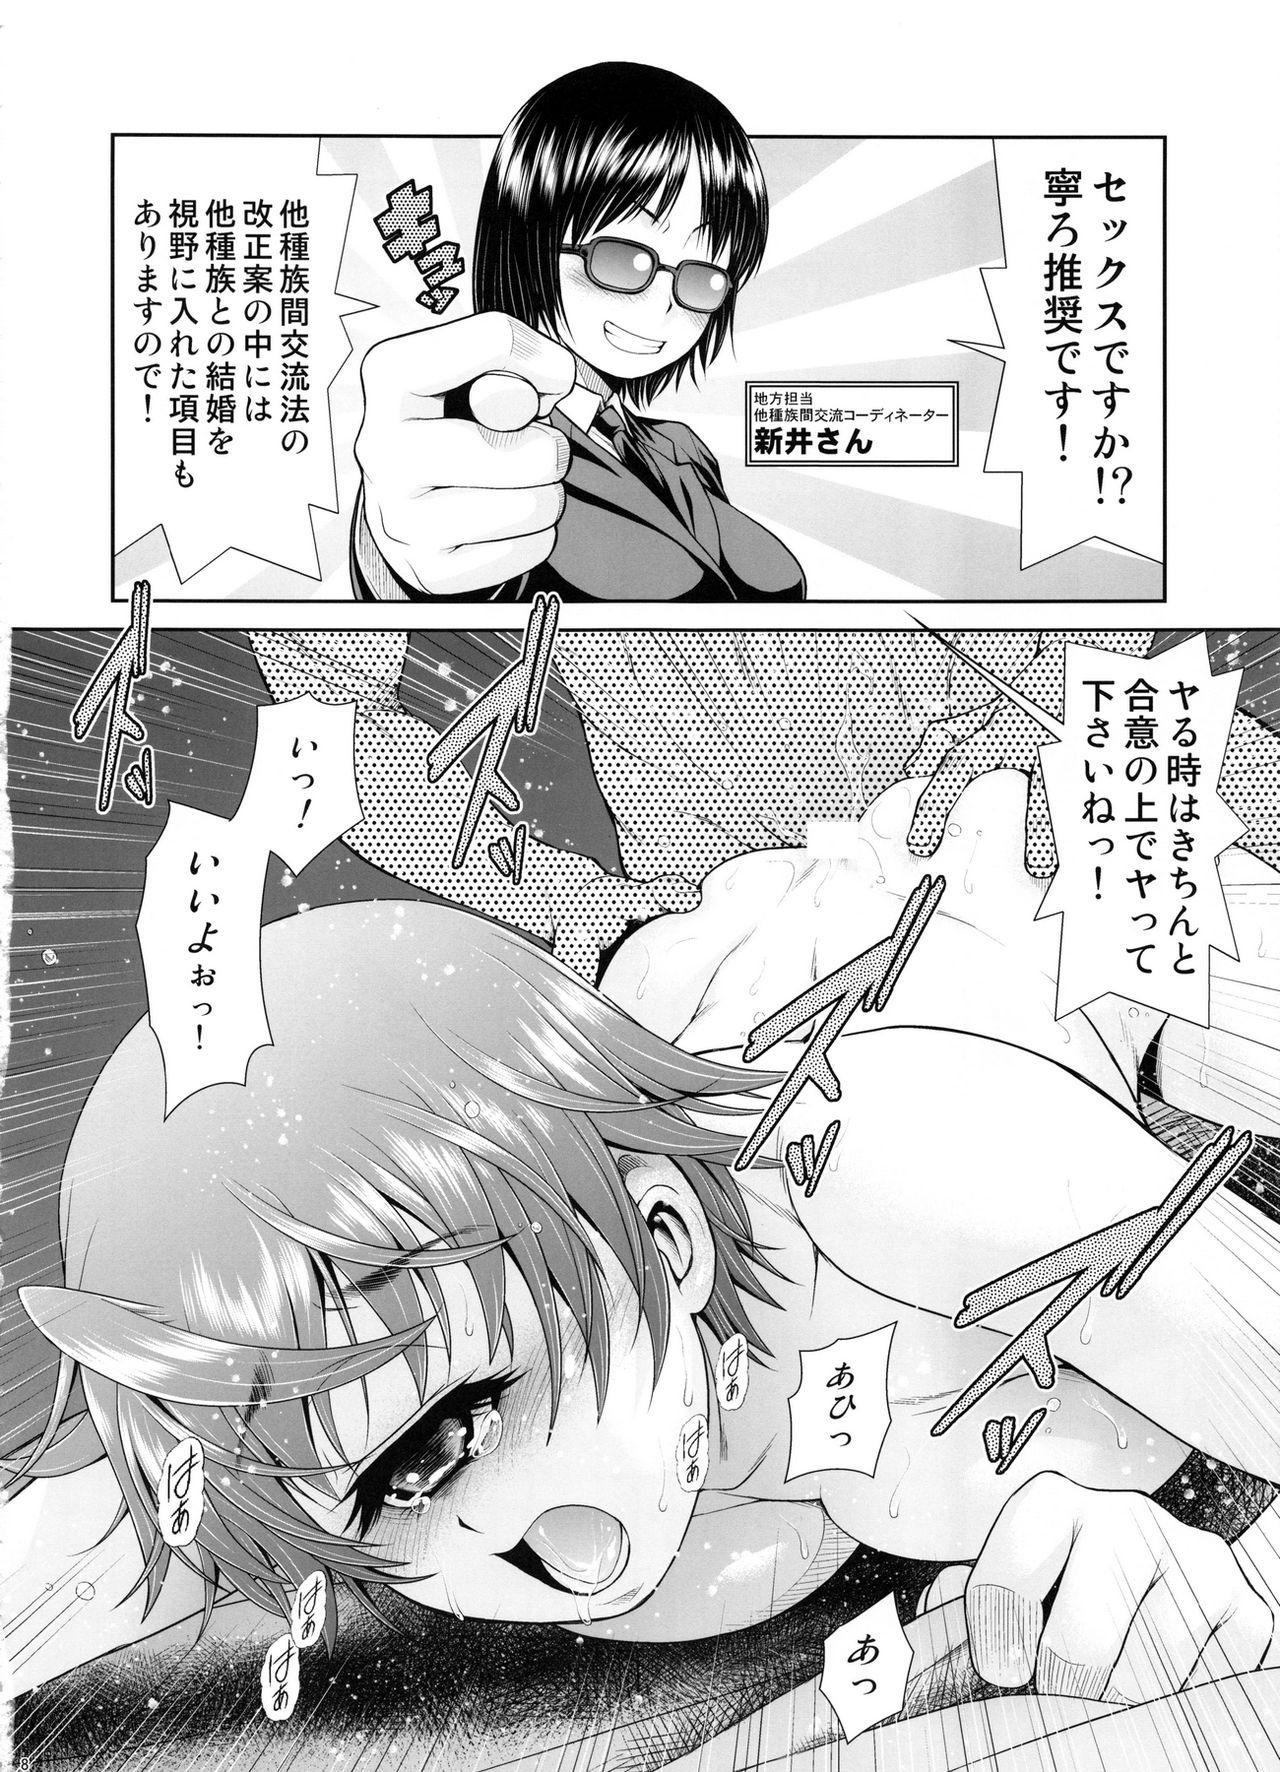 Bottom Monmusu Biyori - Monster musume no iru nichijou Transsexual - Page 7